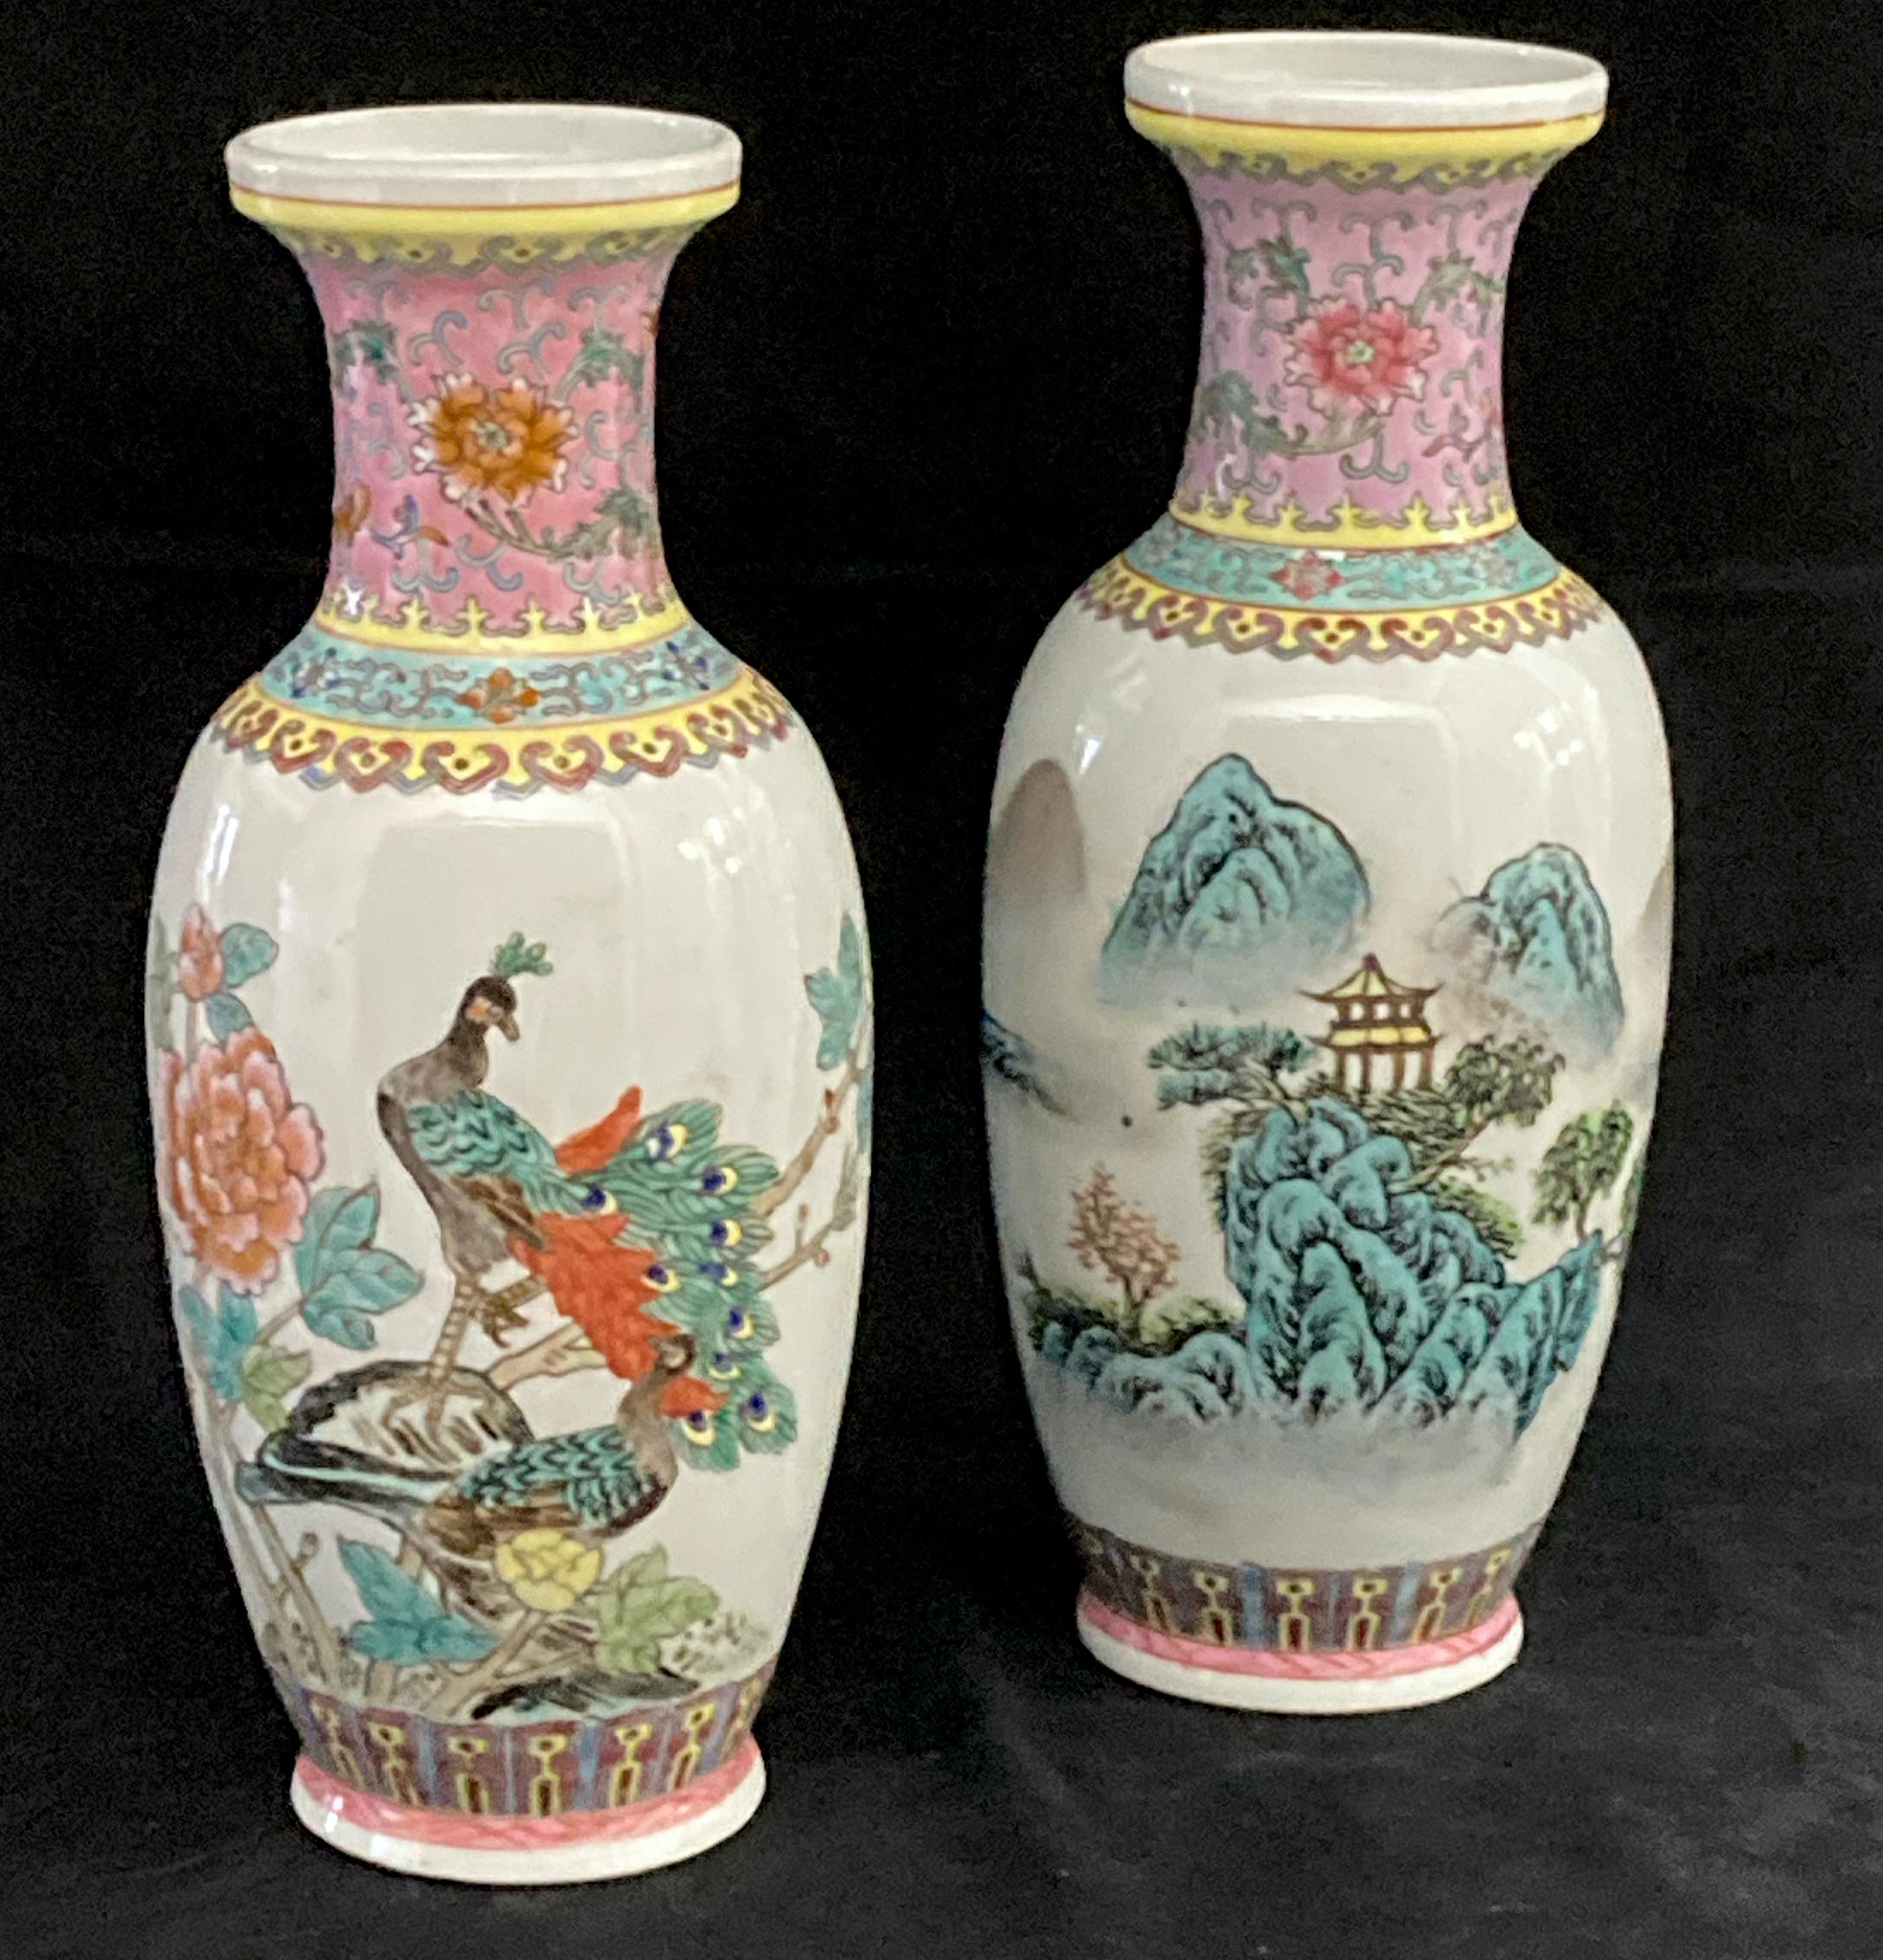 Ein abgestimmtes Paar chinesischer Jingdezhen-Vasen in Famille Rose. Eines mit emailliertem Dekor in Rosa und Grün, das einen Pfau auf einem Steingarten und einem Pfingstrosenzweig darstellt.
Das andere in derselben Farbpalette zeigt eine